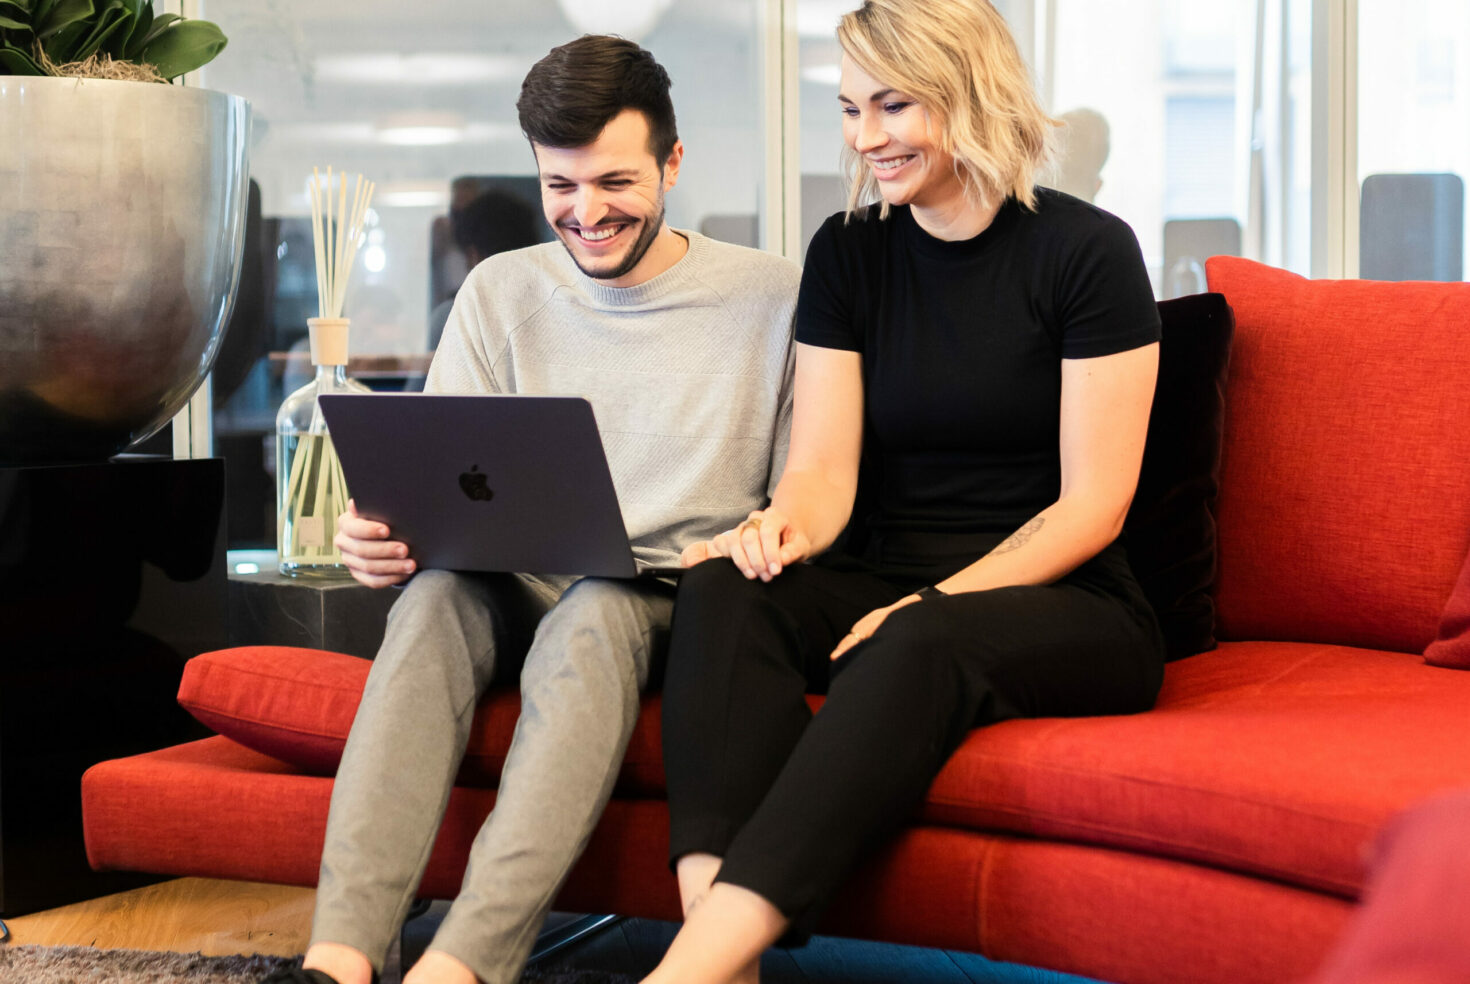 Zwei valantic-CX-Mitarbeiter*innen, die zusammen auf einem Sofa sitzen und in ein Customer-Experience-Präsentation an einem Laptop anschauen.